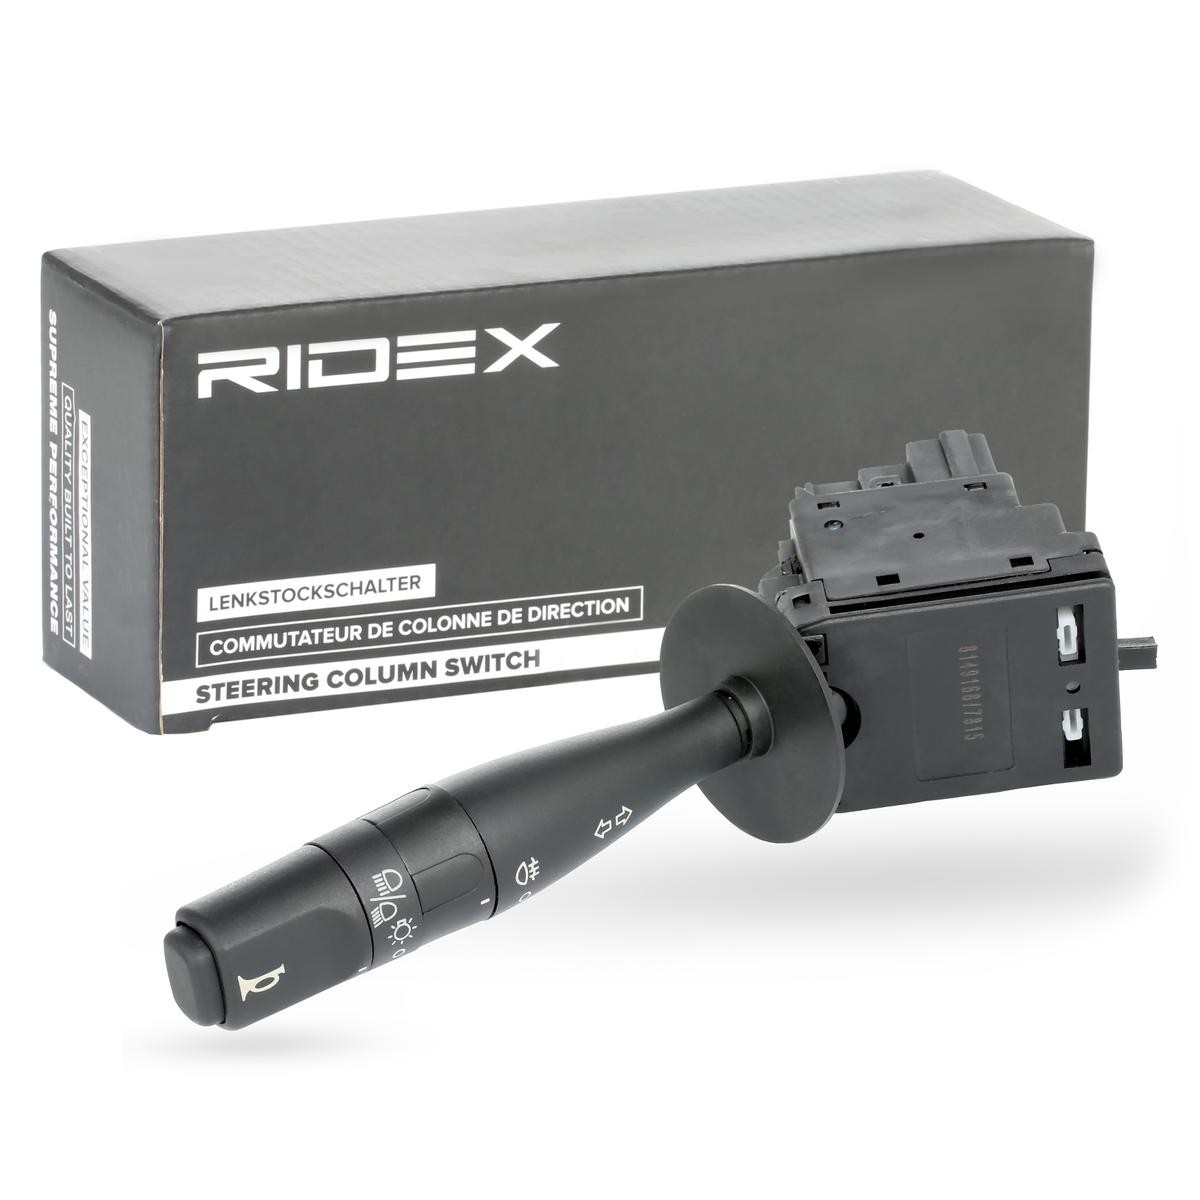 RIDEX Steering Column Switch 1563S0046